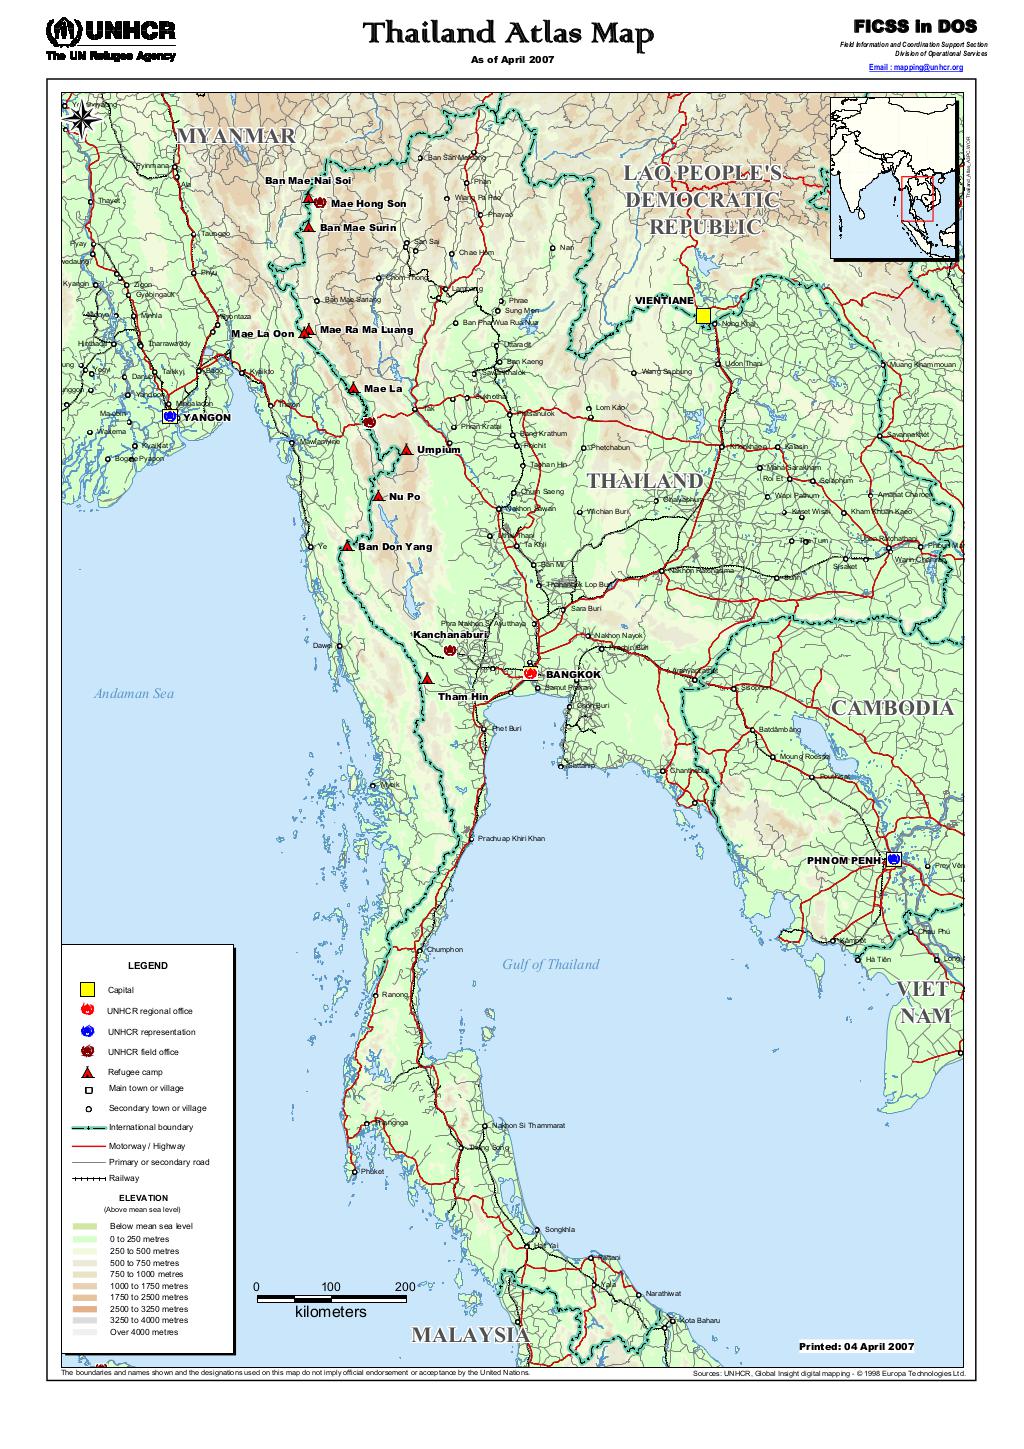 Document - Thailand Atlas Map - April 2007